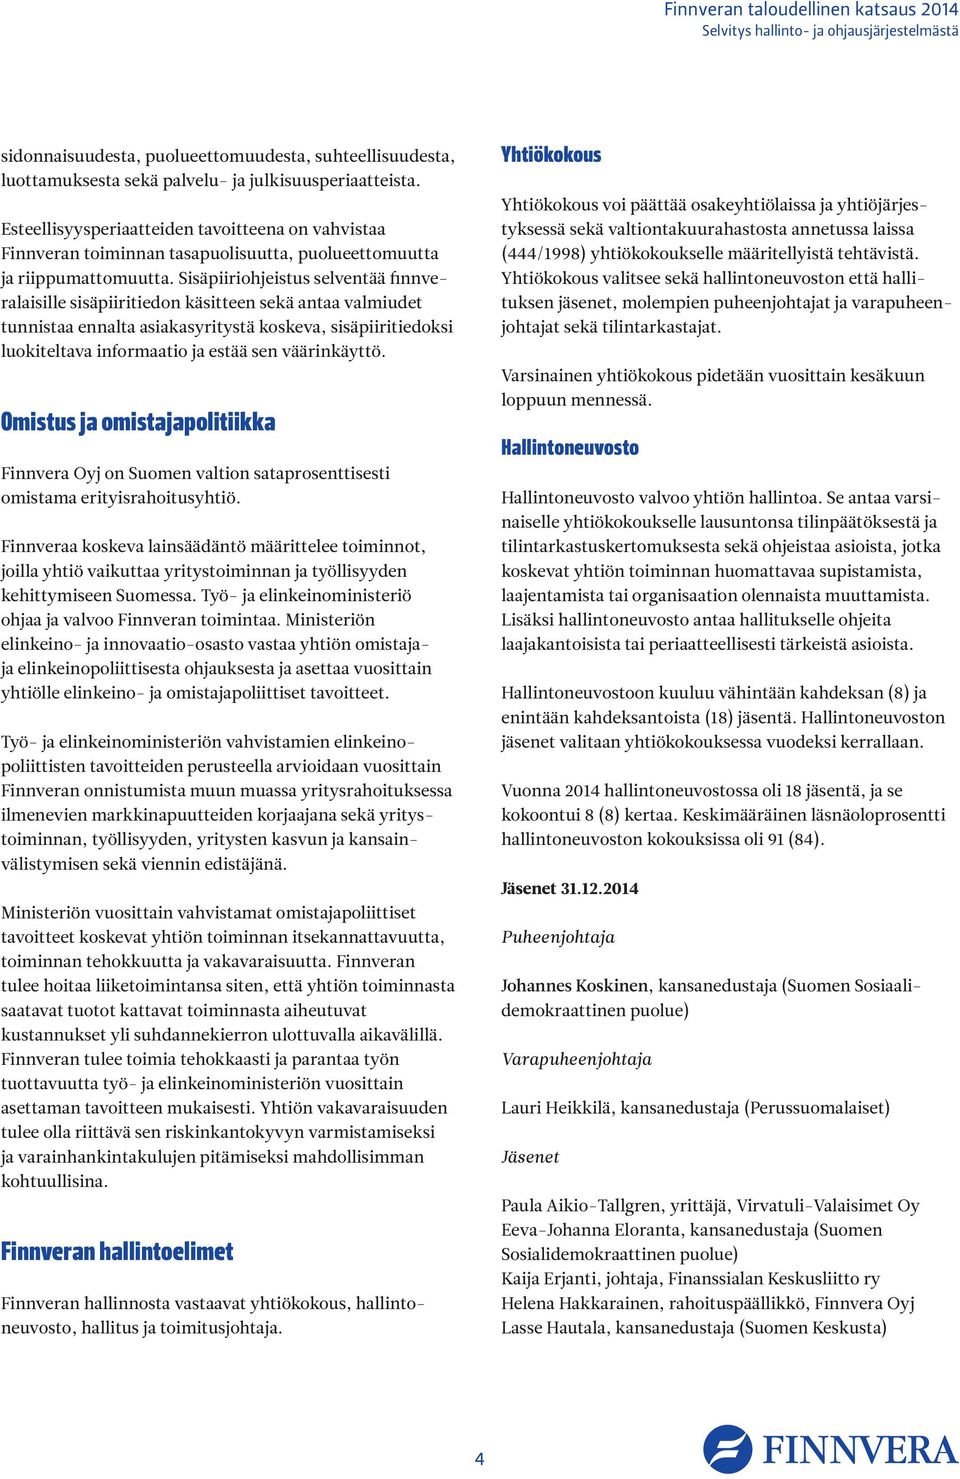 Sisäpiiriohjeistus selventää finnveralaisille sisäpiiritiedon käsitteen sekä antaa valmiudet tunnistaa ennalta asiakasyritystä koskeva, sisäpiiritiedoksi luokiteltava informaatio ja estää sen